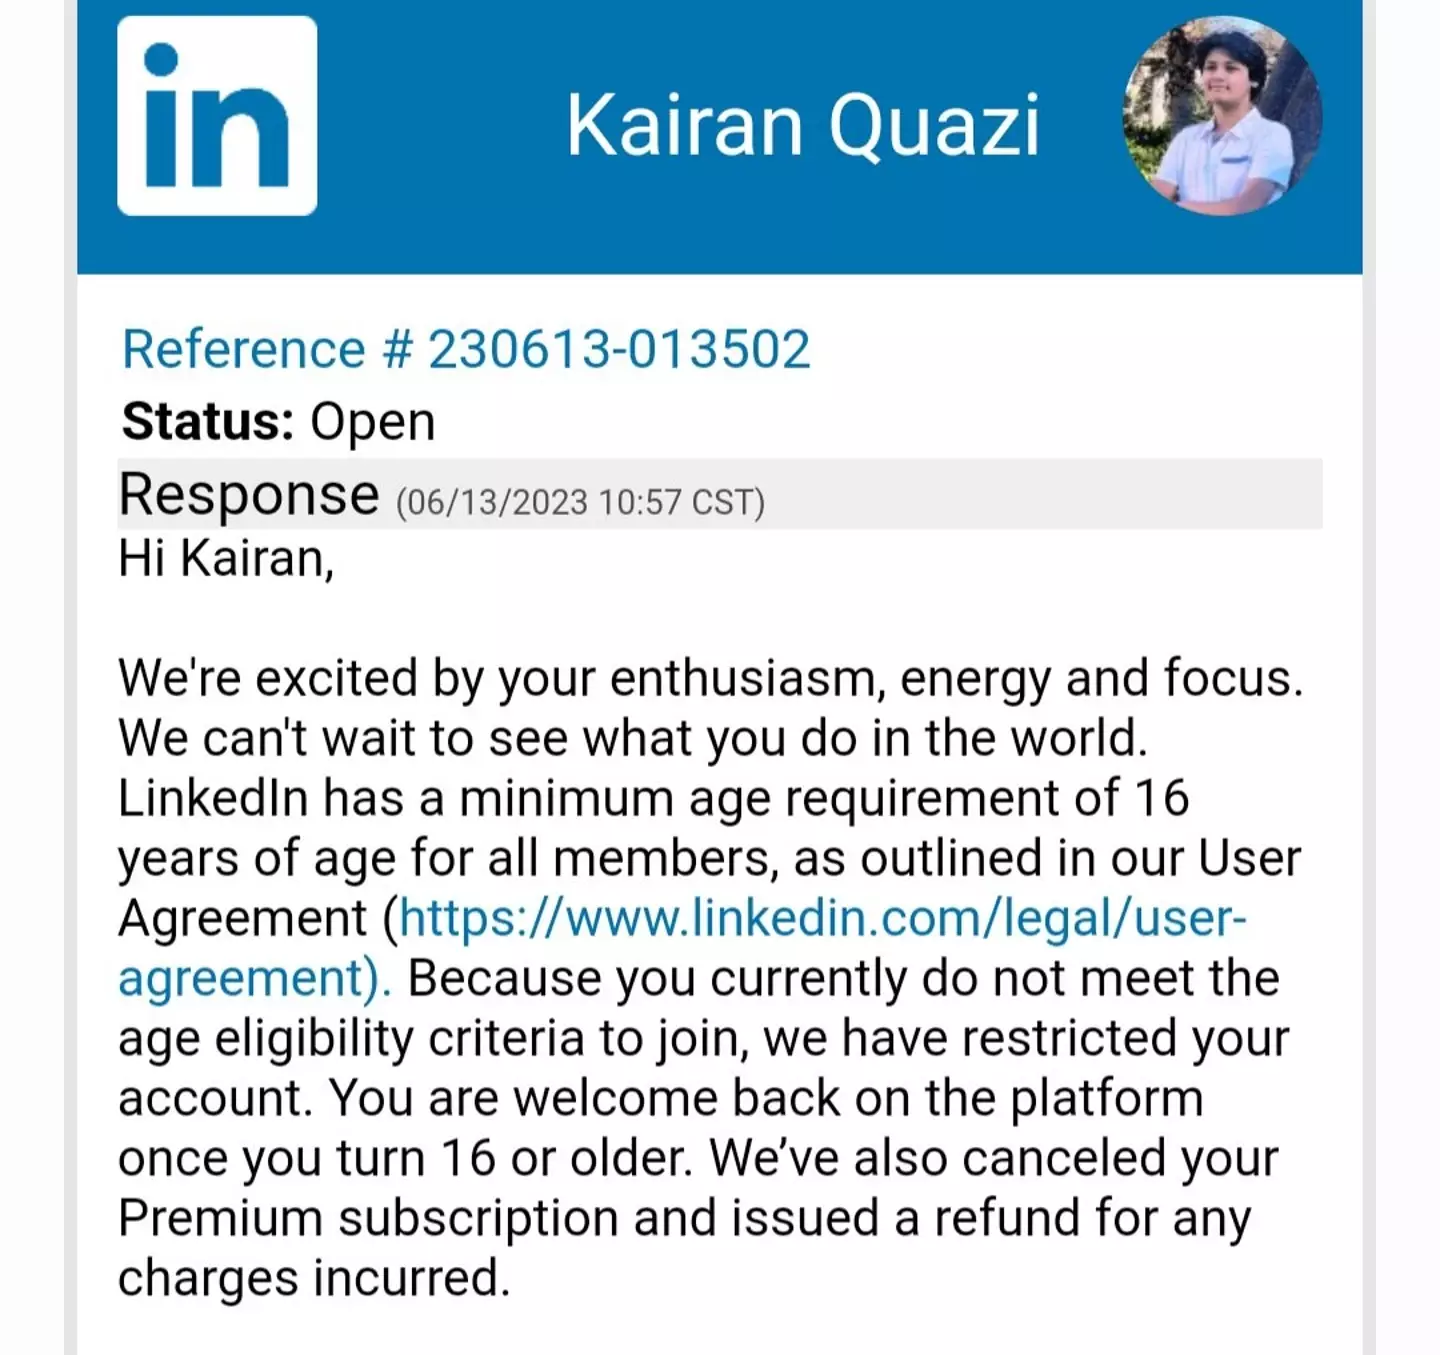 Kairan Quazi got this message from LinkedIn.